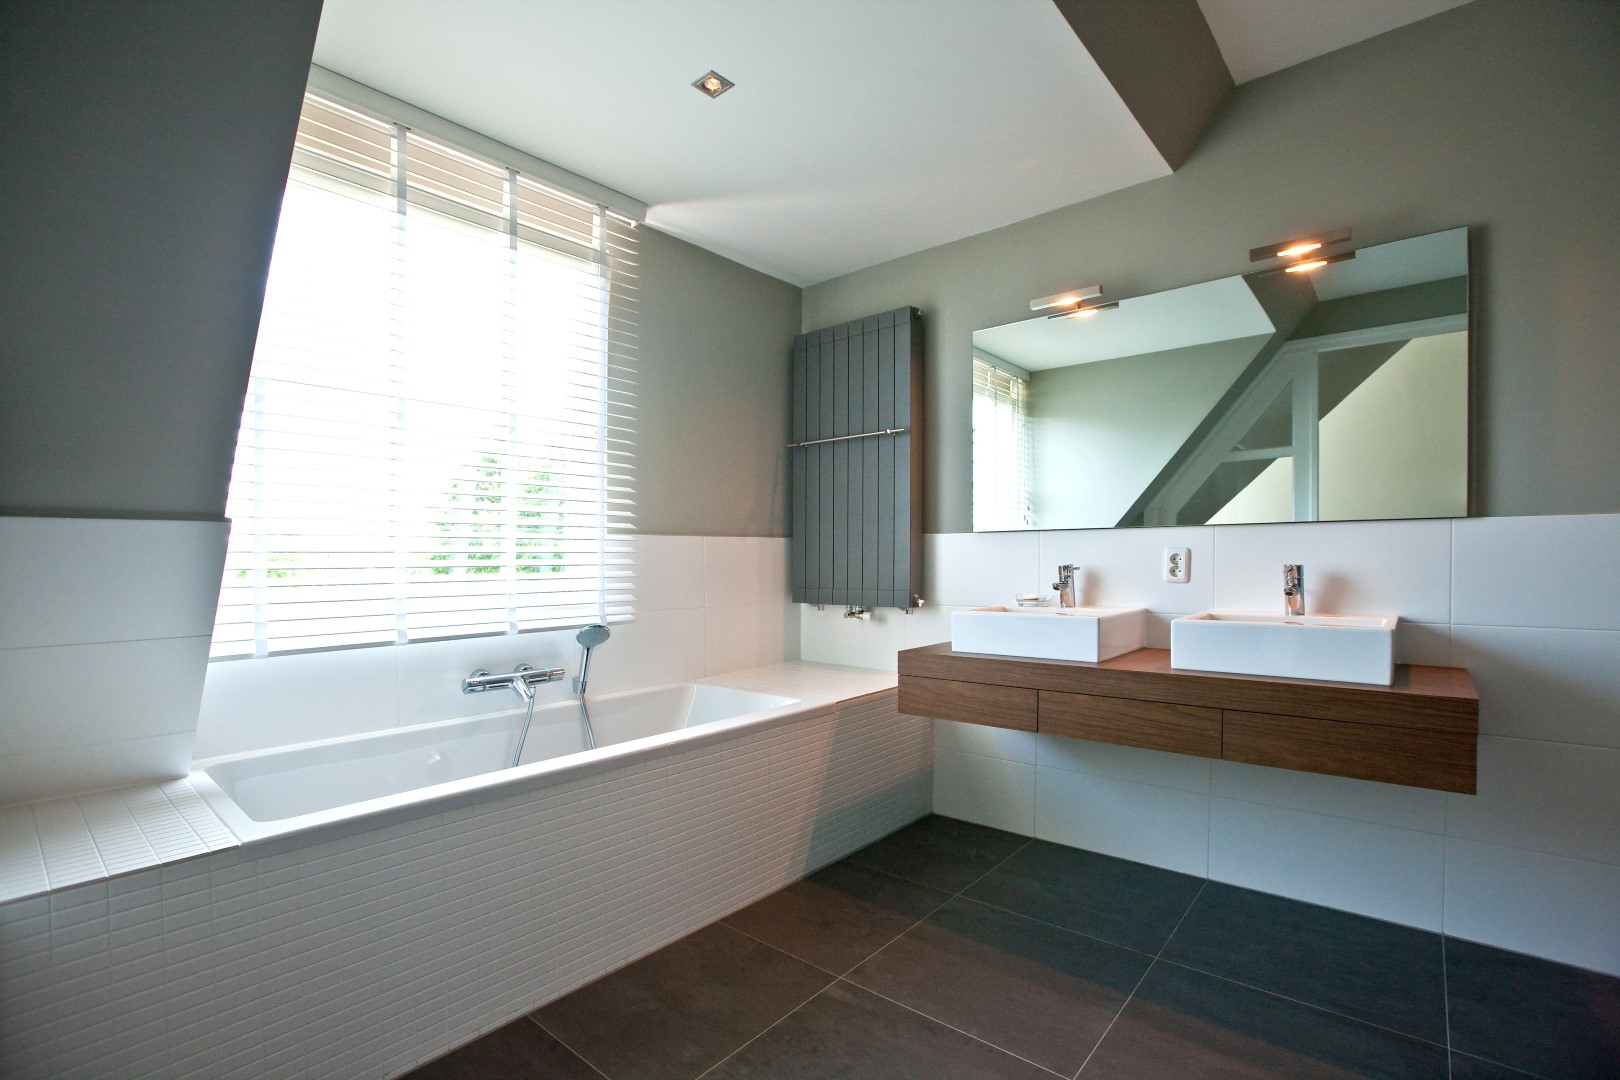 Foto: Huis bouwen   De badkamer van de master bedroom   Lichtenberg Exclusieve Villabouw